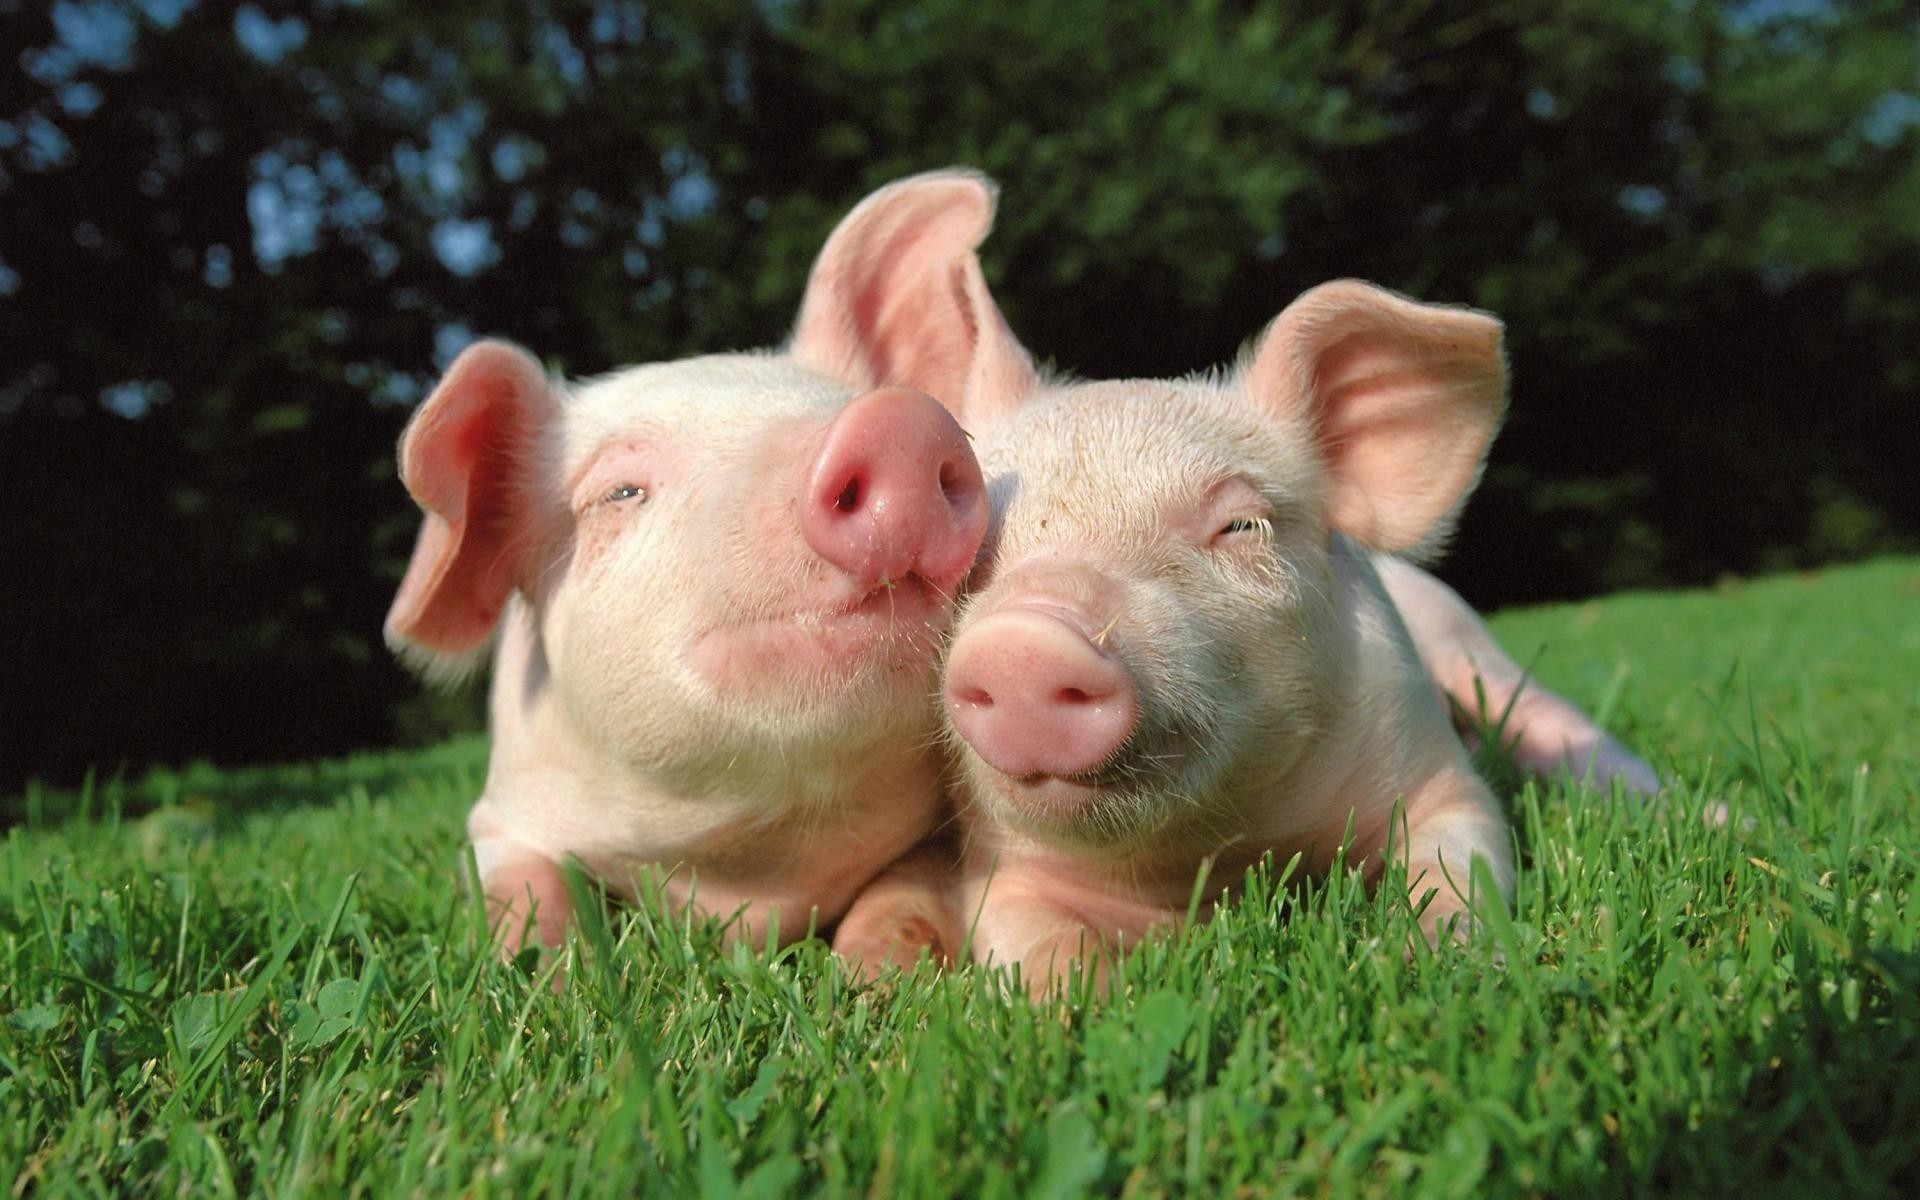 Bạn yêu thích lợn và đang tìm kiếm một bức ảnh đáng yêu về lợn? Đừng bỏ qua bức ảnh này nhé! Chú lợn đáng yêu ấy sẽ khiến bạn không thể rời mắt.